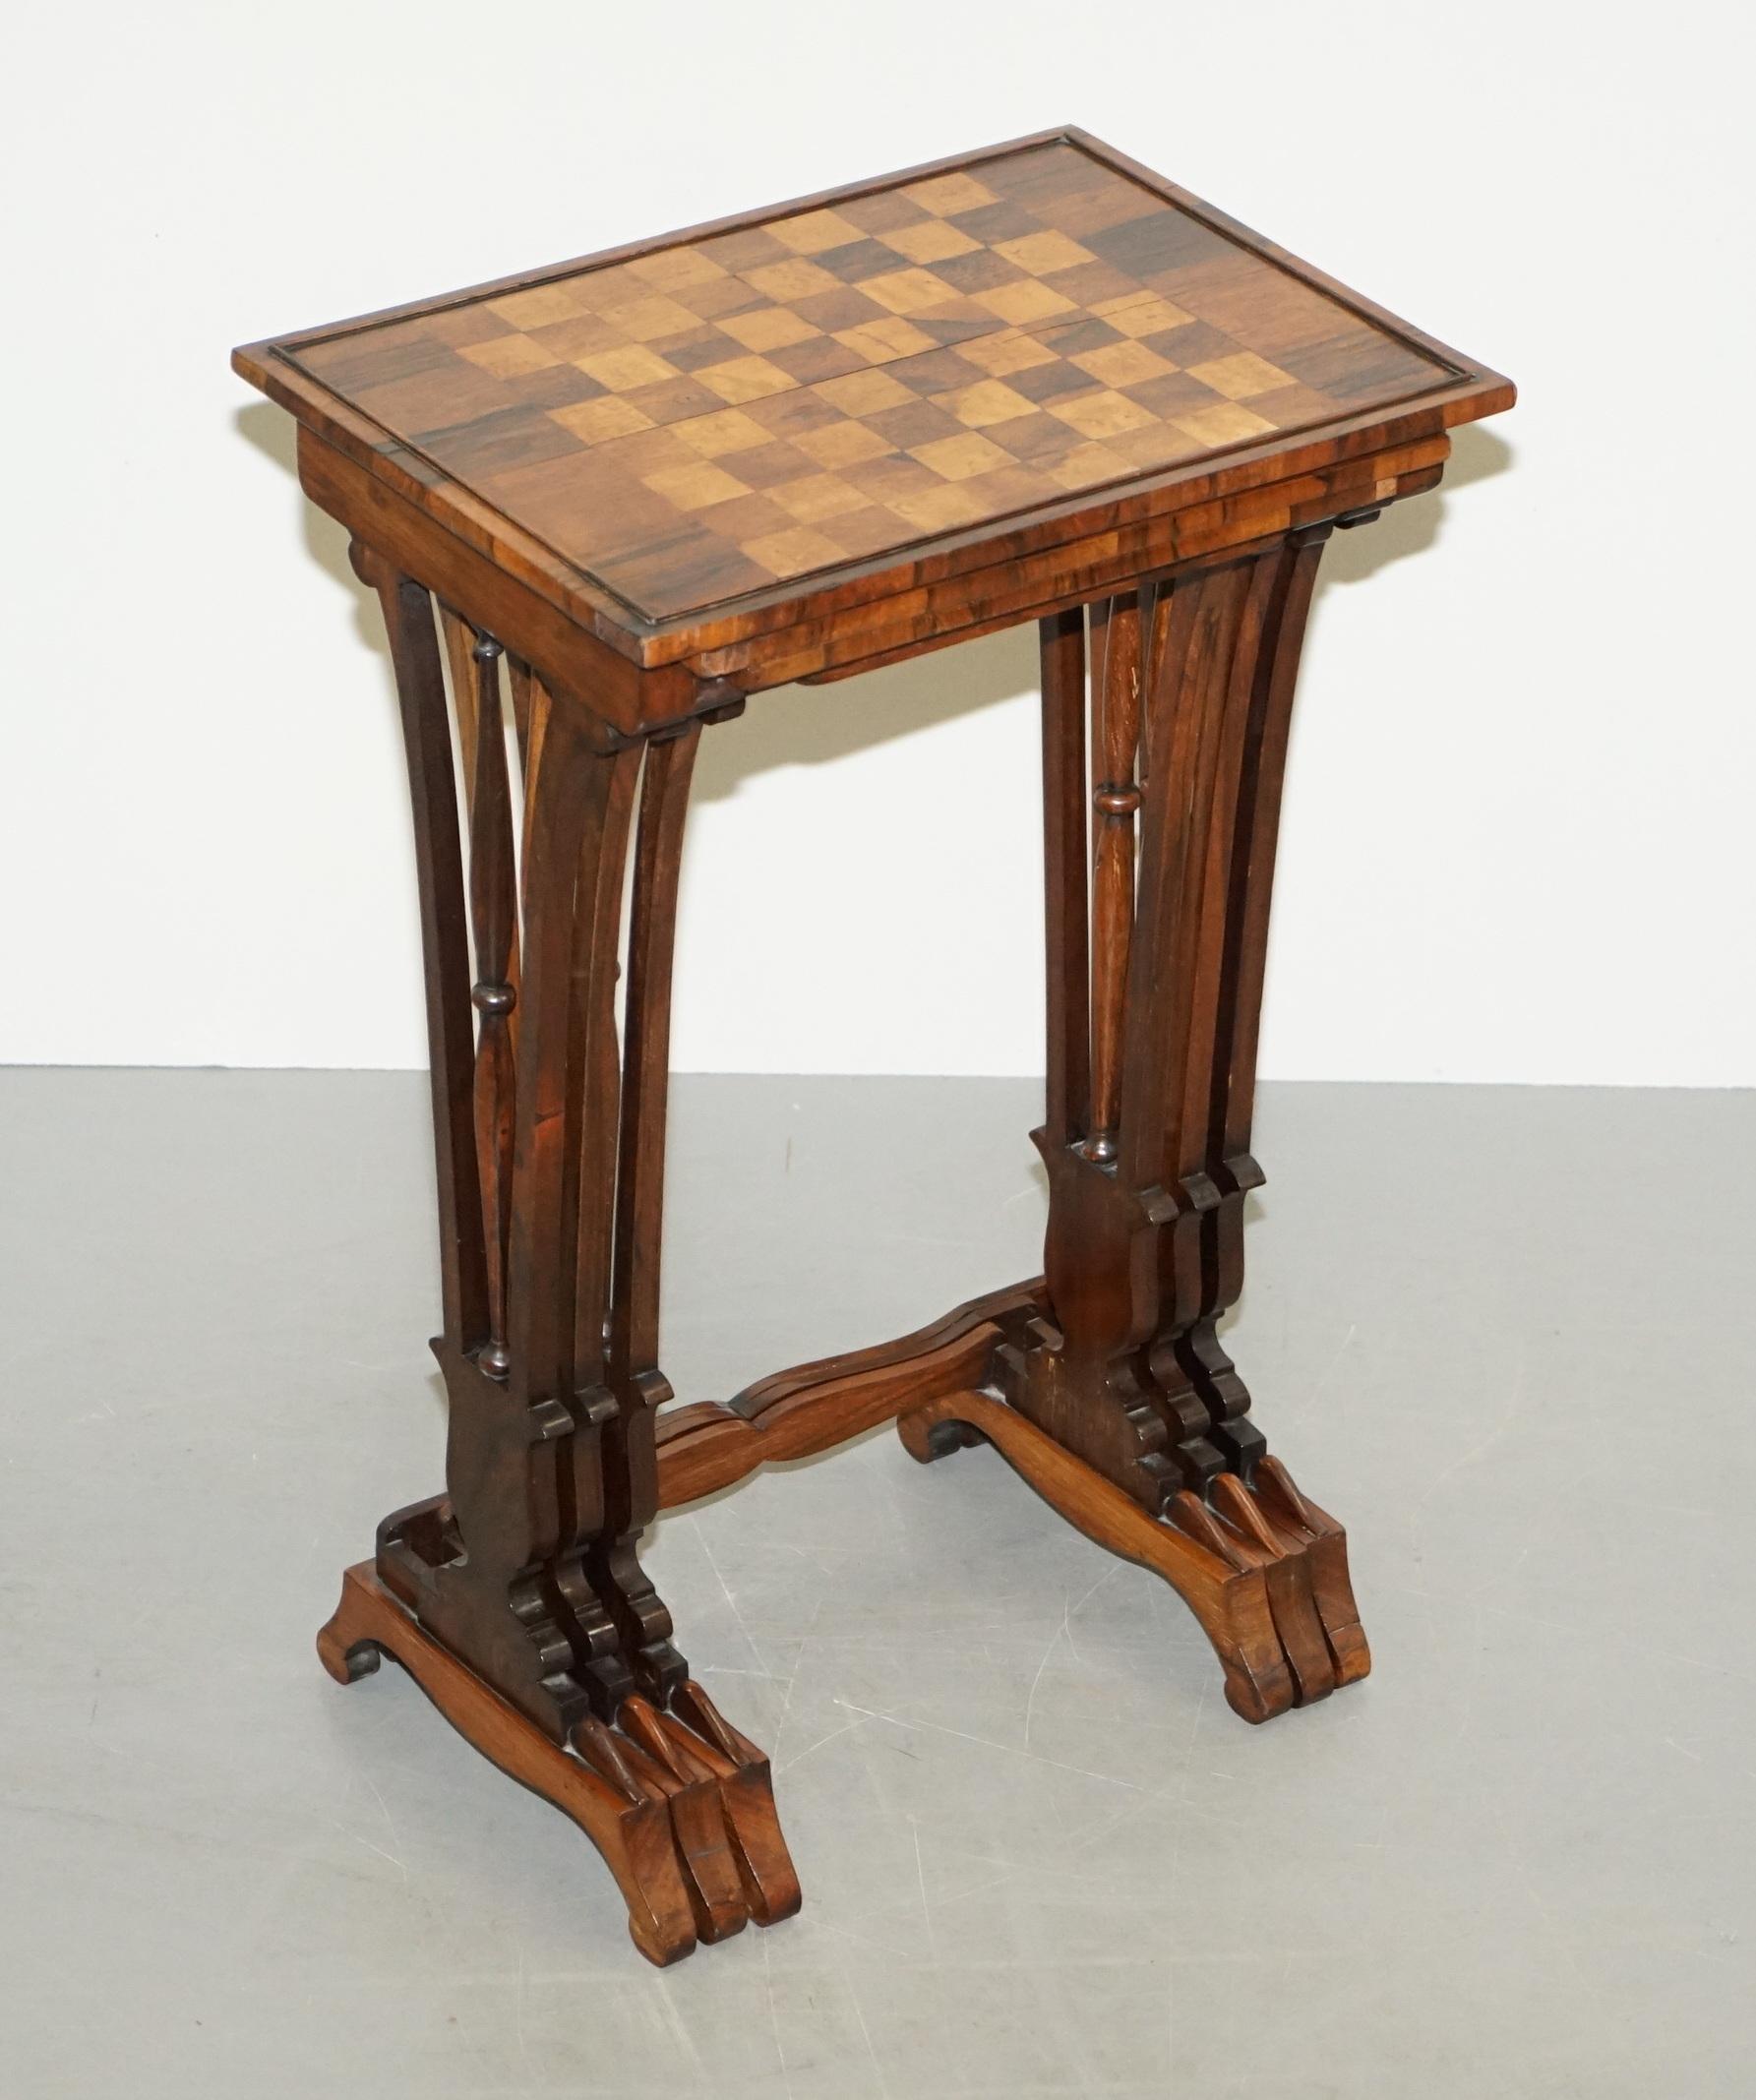 Wir freuen uns, diese sehr schöne Regency ca. 1810-1820 Nest von Tischen in Hartholz zugeschrieben Gillows von Lancaster zum Verkauf anbieten 

Ein sehr feines Nest, sicherlich von Gillows gemacht, sie sind aus sehr feinem Hartholz gefertigt und